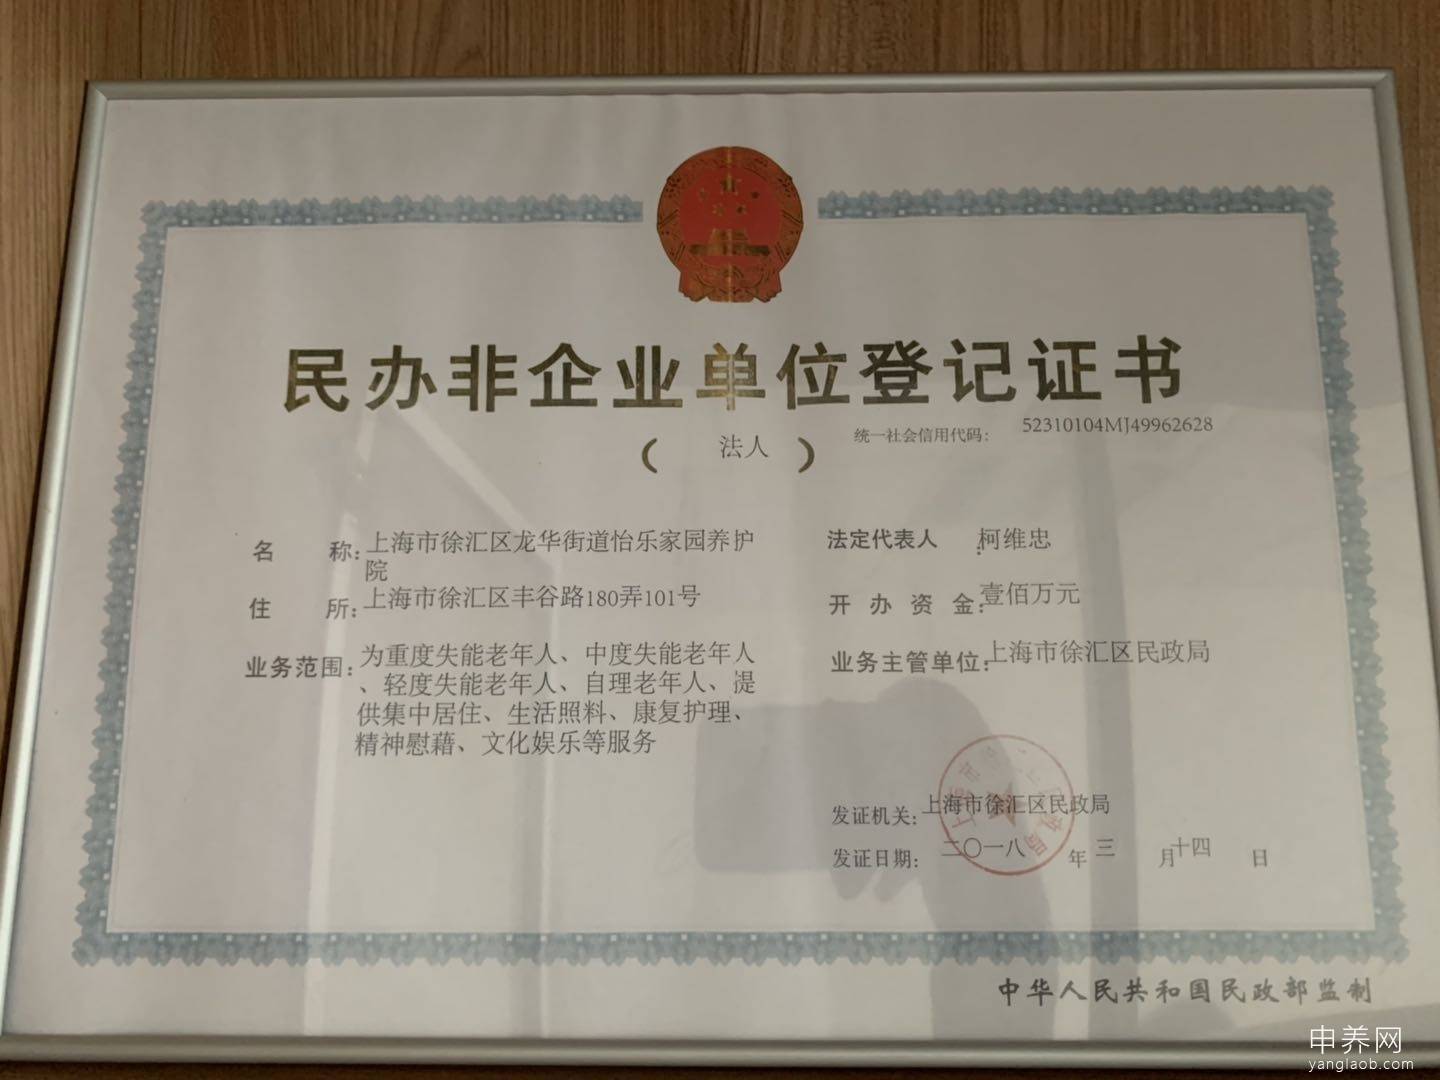 上海市徐汇区龙华街道怡乐家园养护院证书6